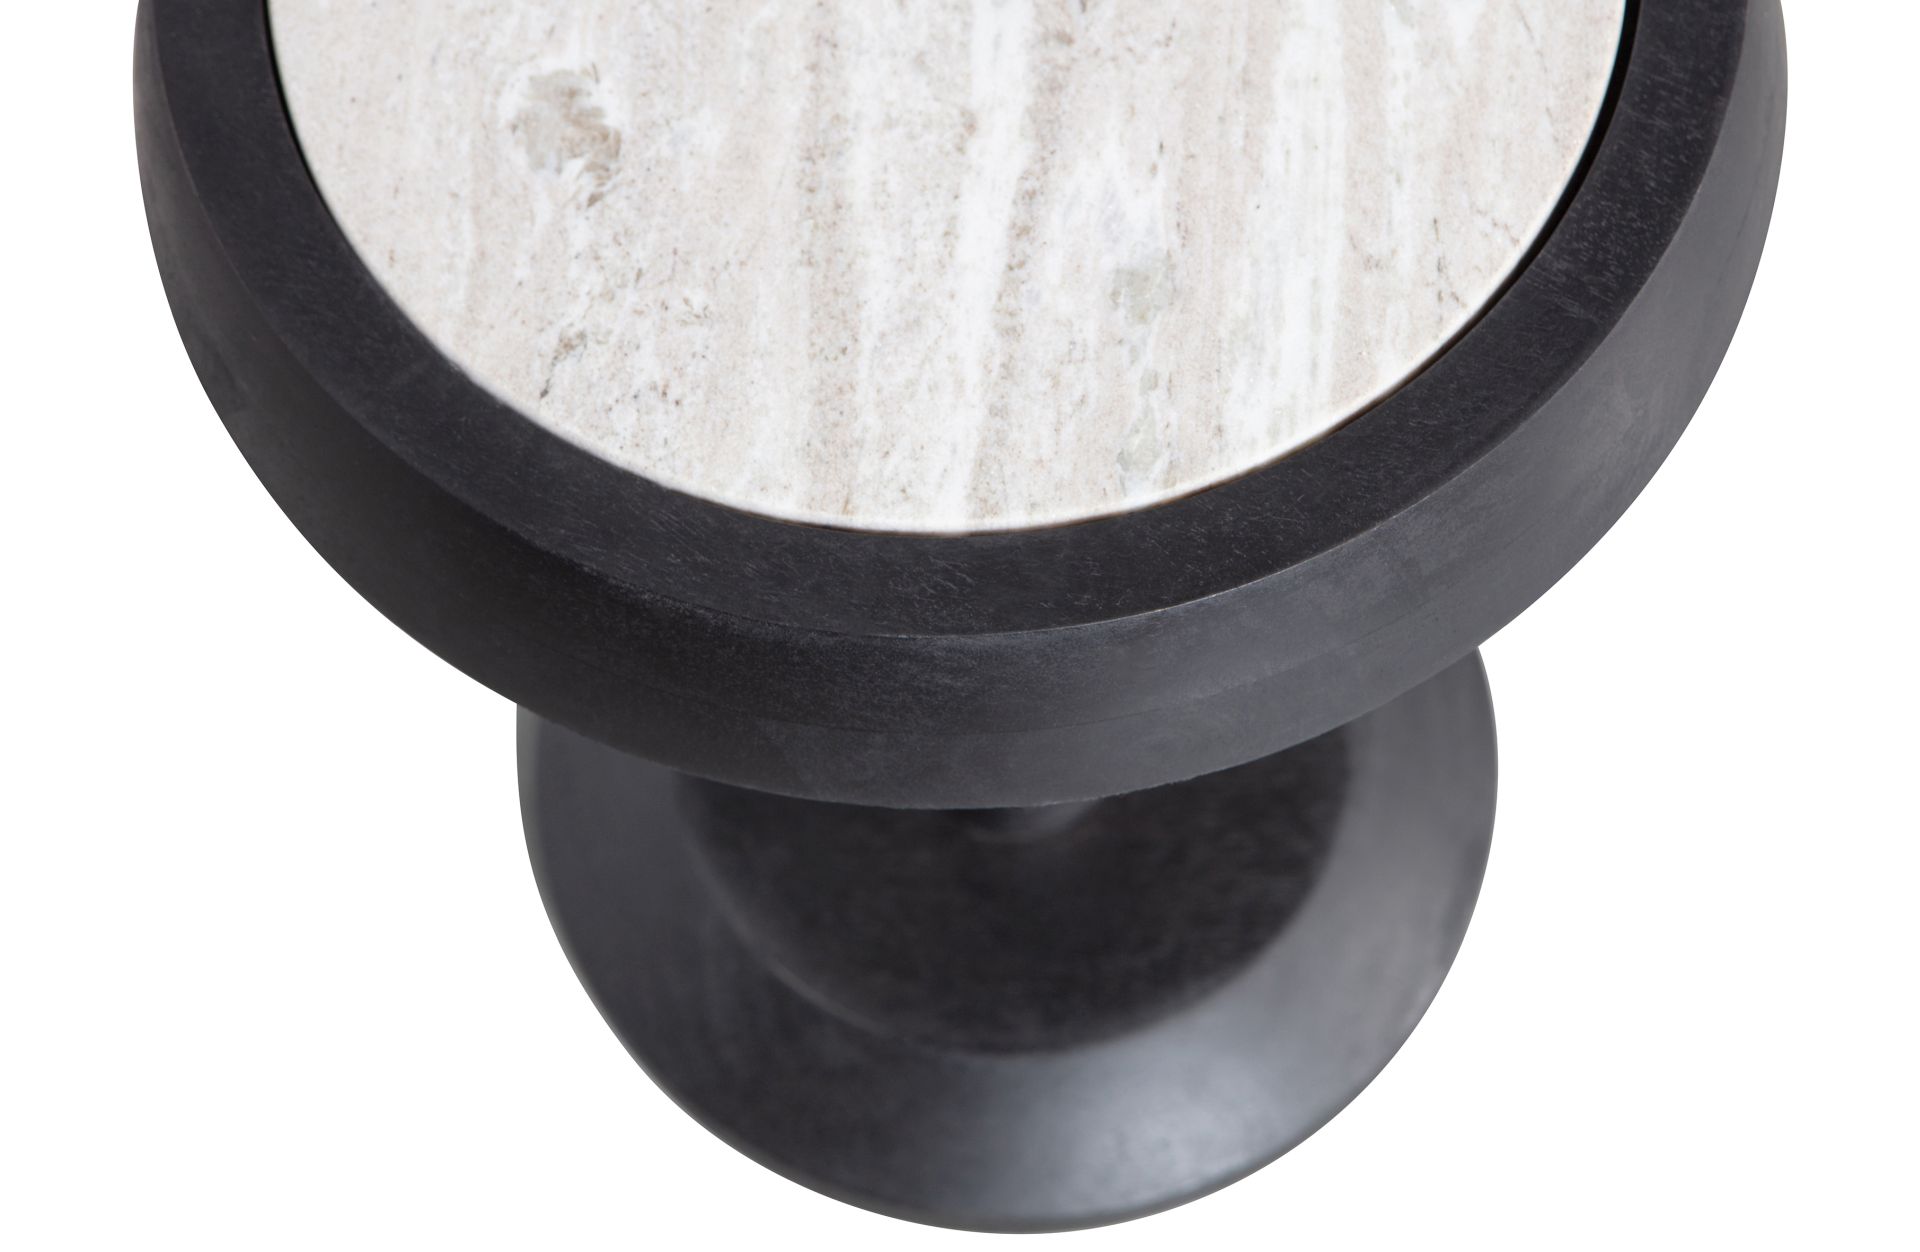 Der Beistelltisch Nanne überzeugt mit seinem schlichtem aber auch modernem Design. Gefertigt wurde der Tisch aus Mangoholz, welches einen schwarzen Farbton besitzt. Die Tischplatte ist aus Marmor.